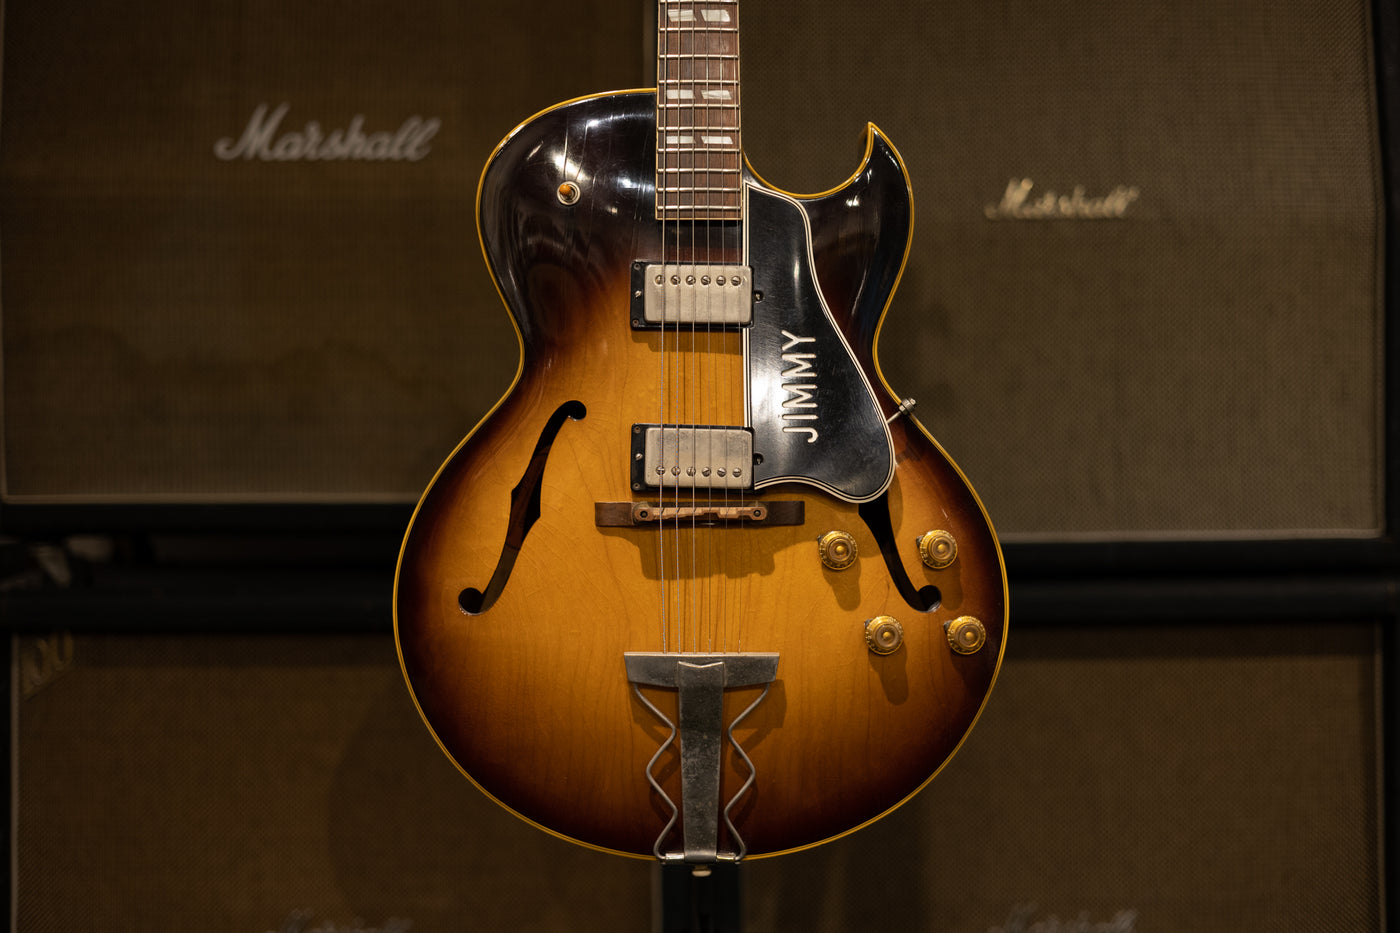 1957 Gibson ES-175D- Sunburst